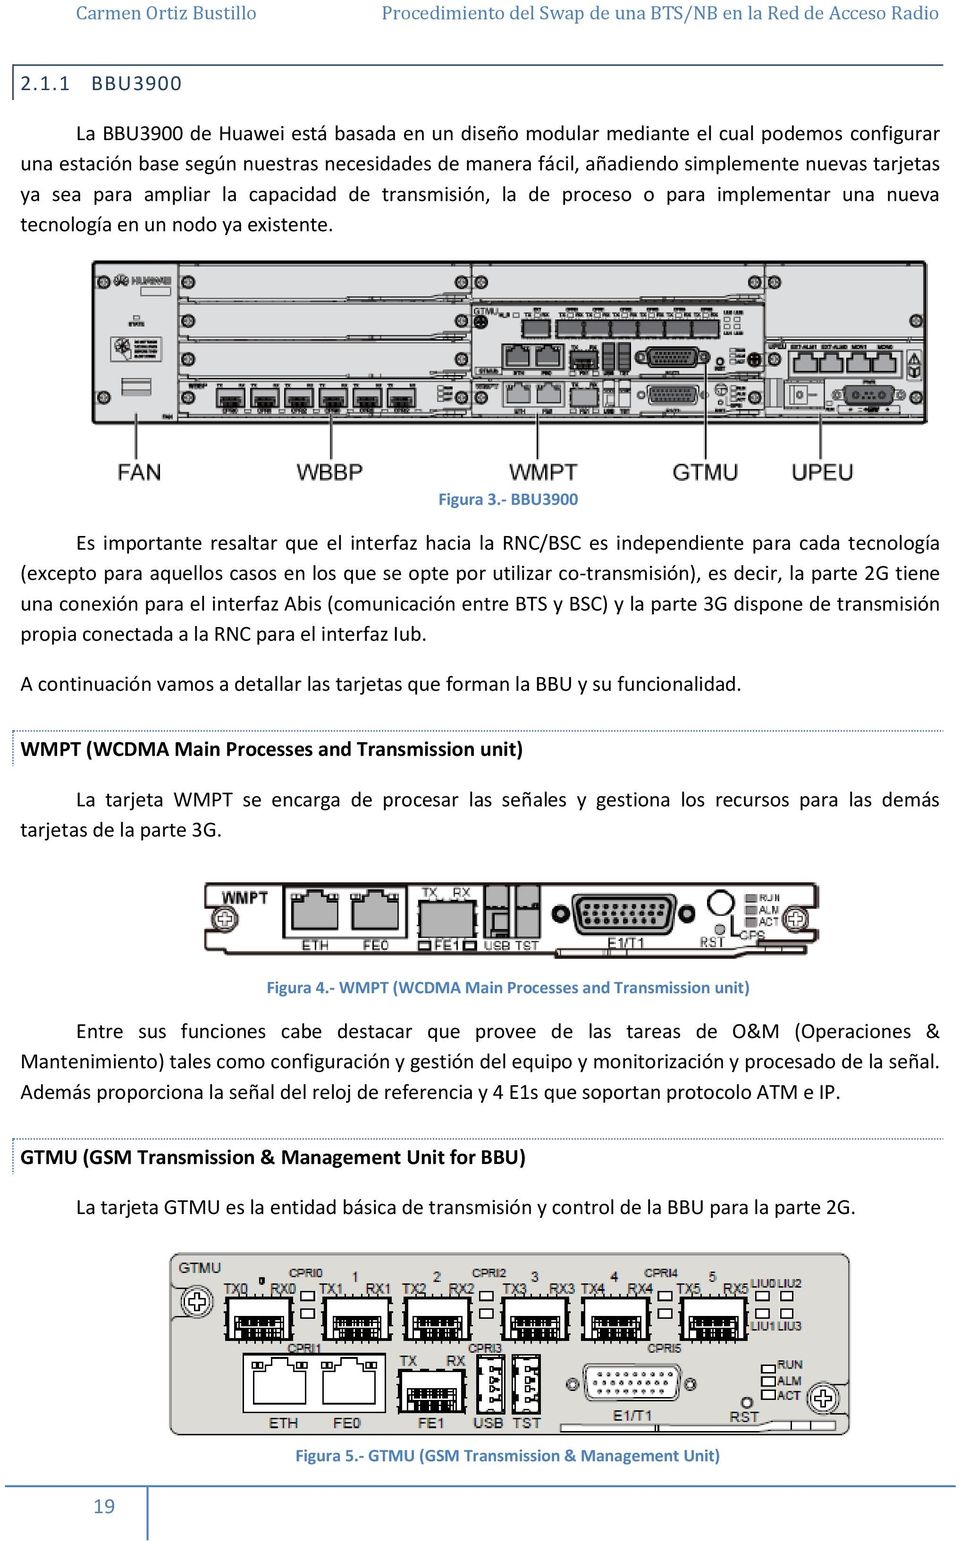 - BBU3900 Es importante resaltar que el interfaz hacia la RNC/BSC es independiente para cada tecnología (excepto para aquellos casos en los que se opte por utilizar co-transmisión), es decir, la